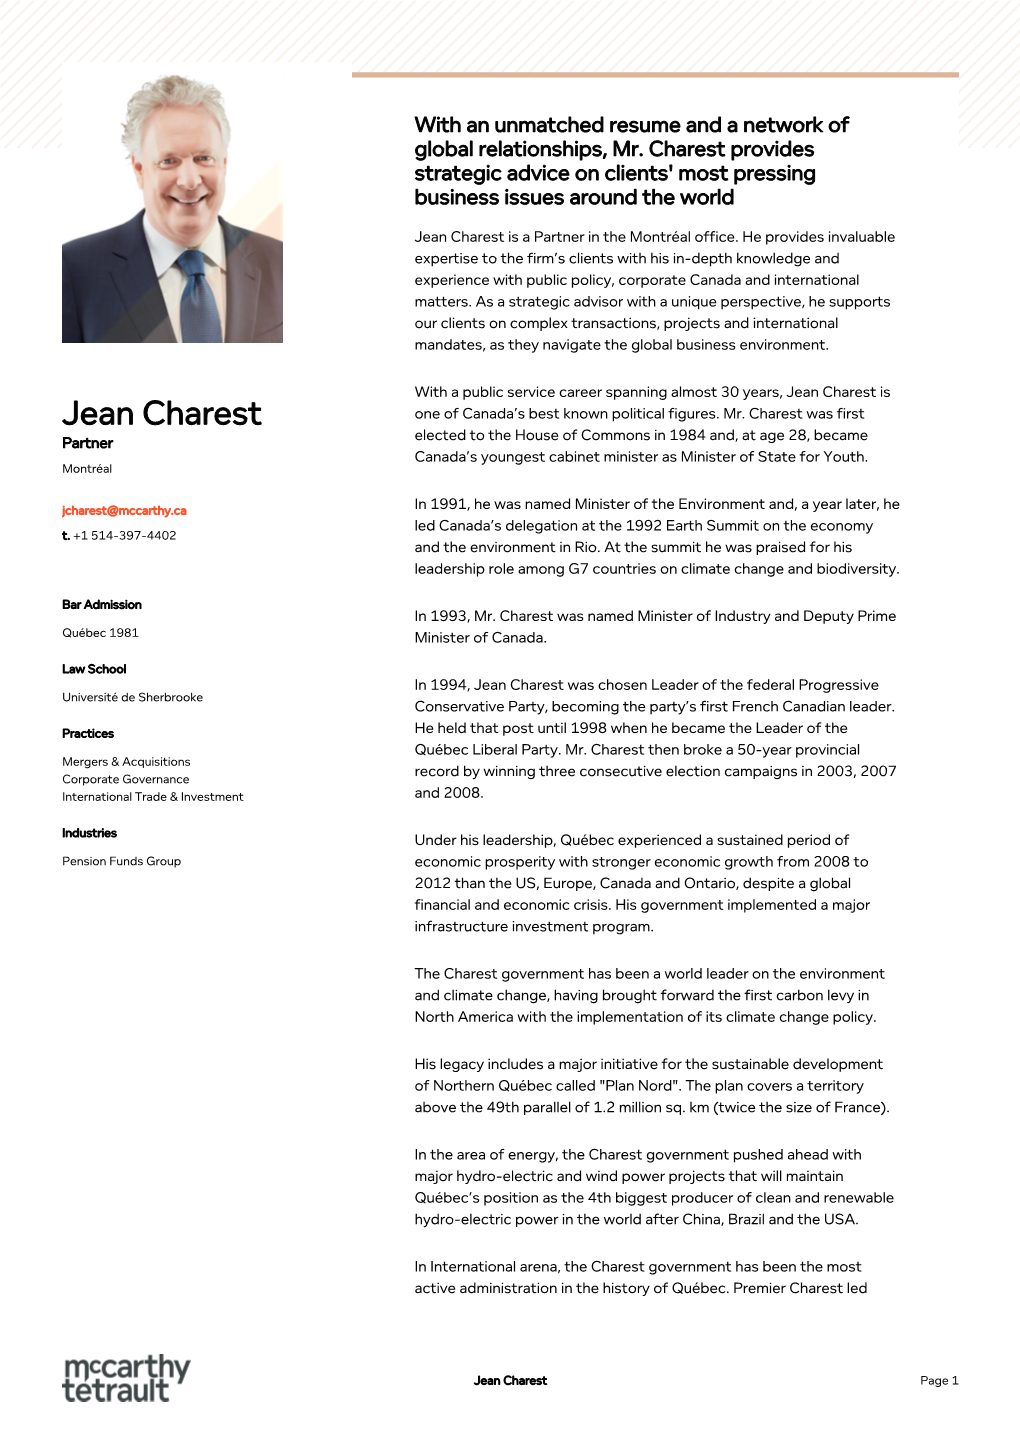 Jean Charest Global Relationships, Mr